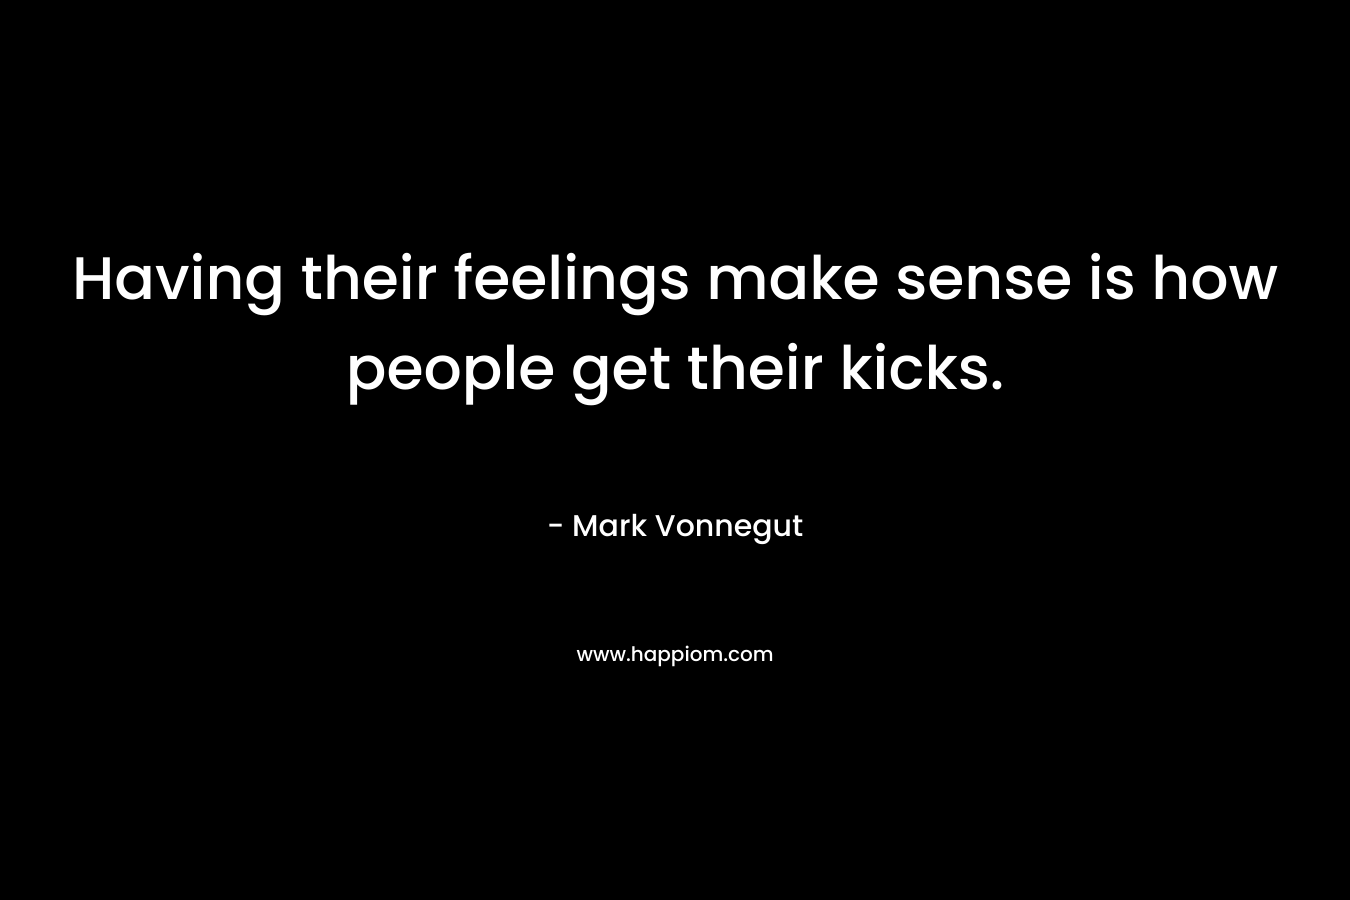 Having their feelings make sense is how people get their kicks.